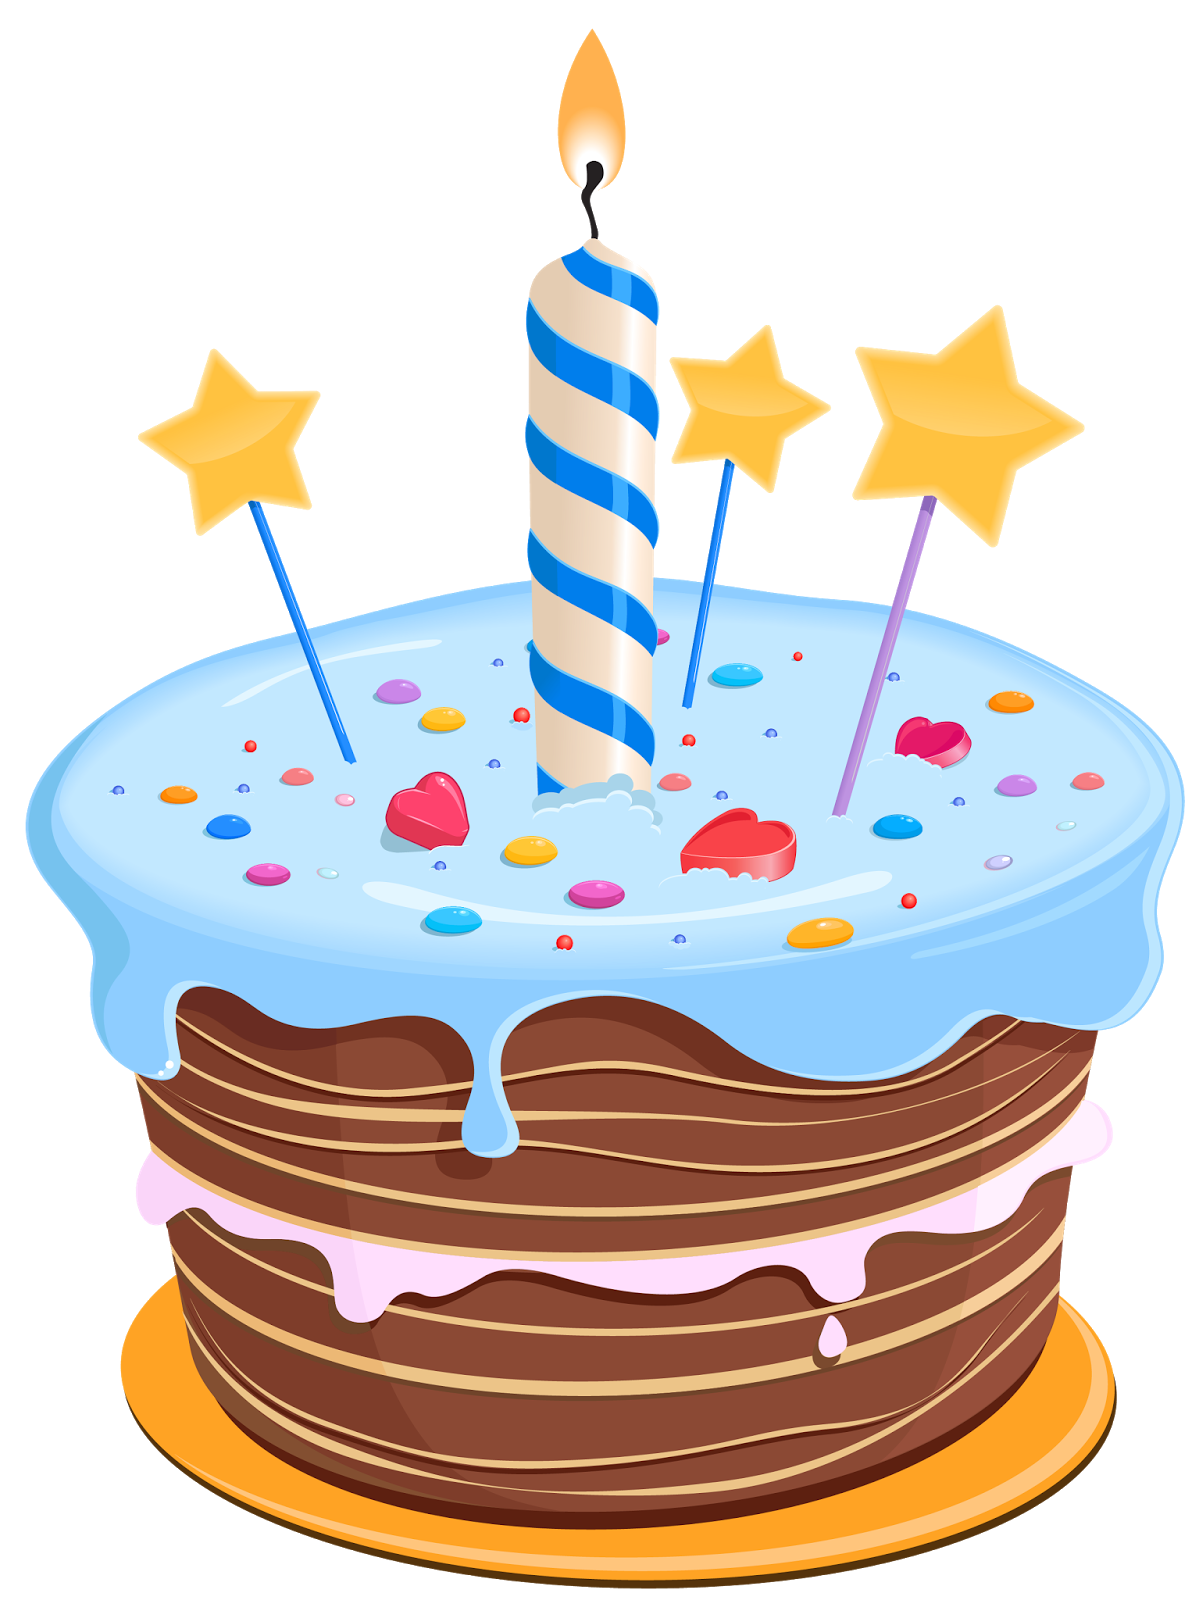 Immagini torta di compleanno. Clipart church birthday